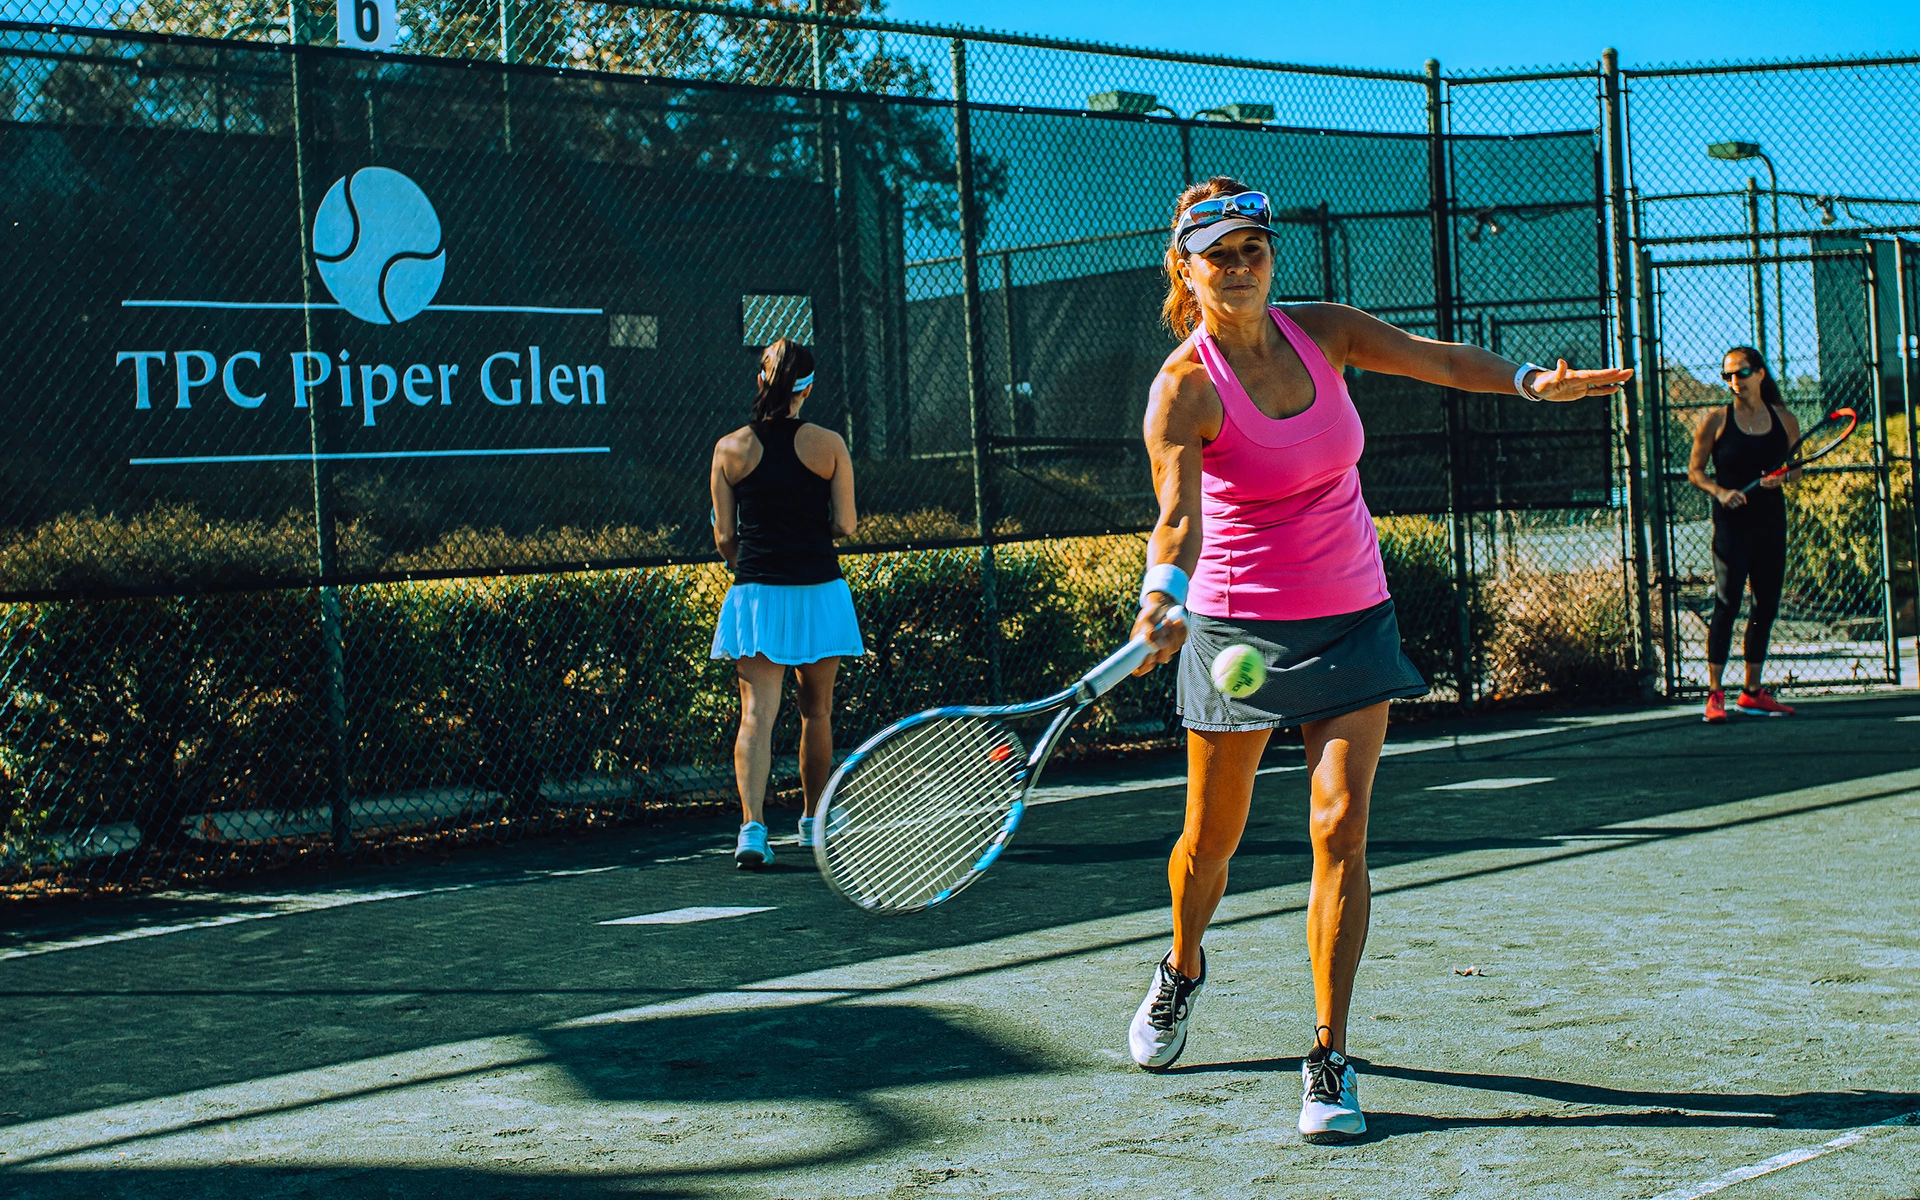 TPC Piper Glen - Members playing tennis